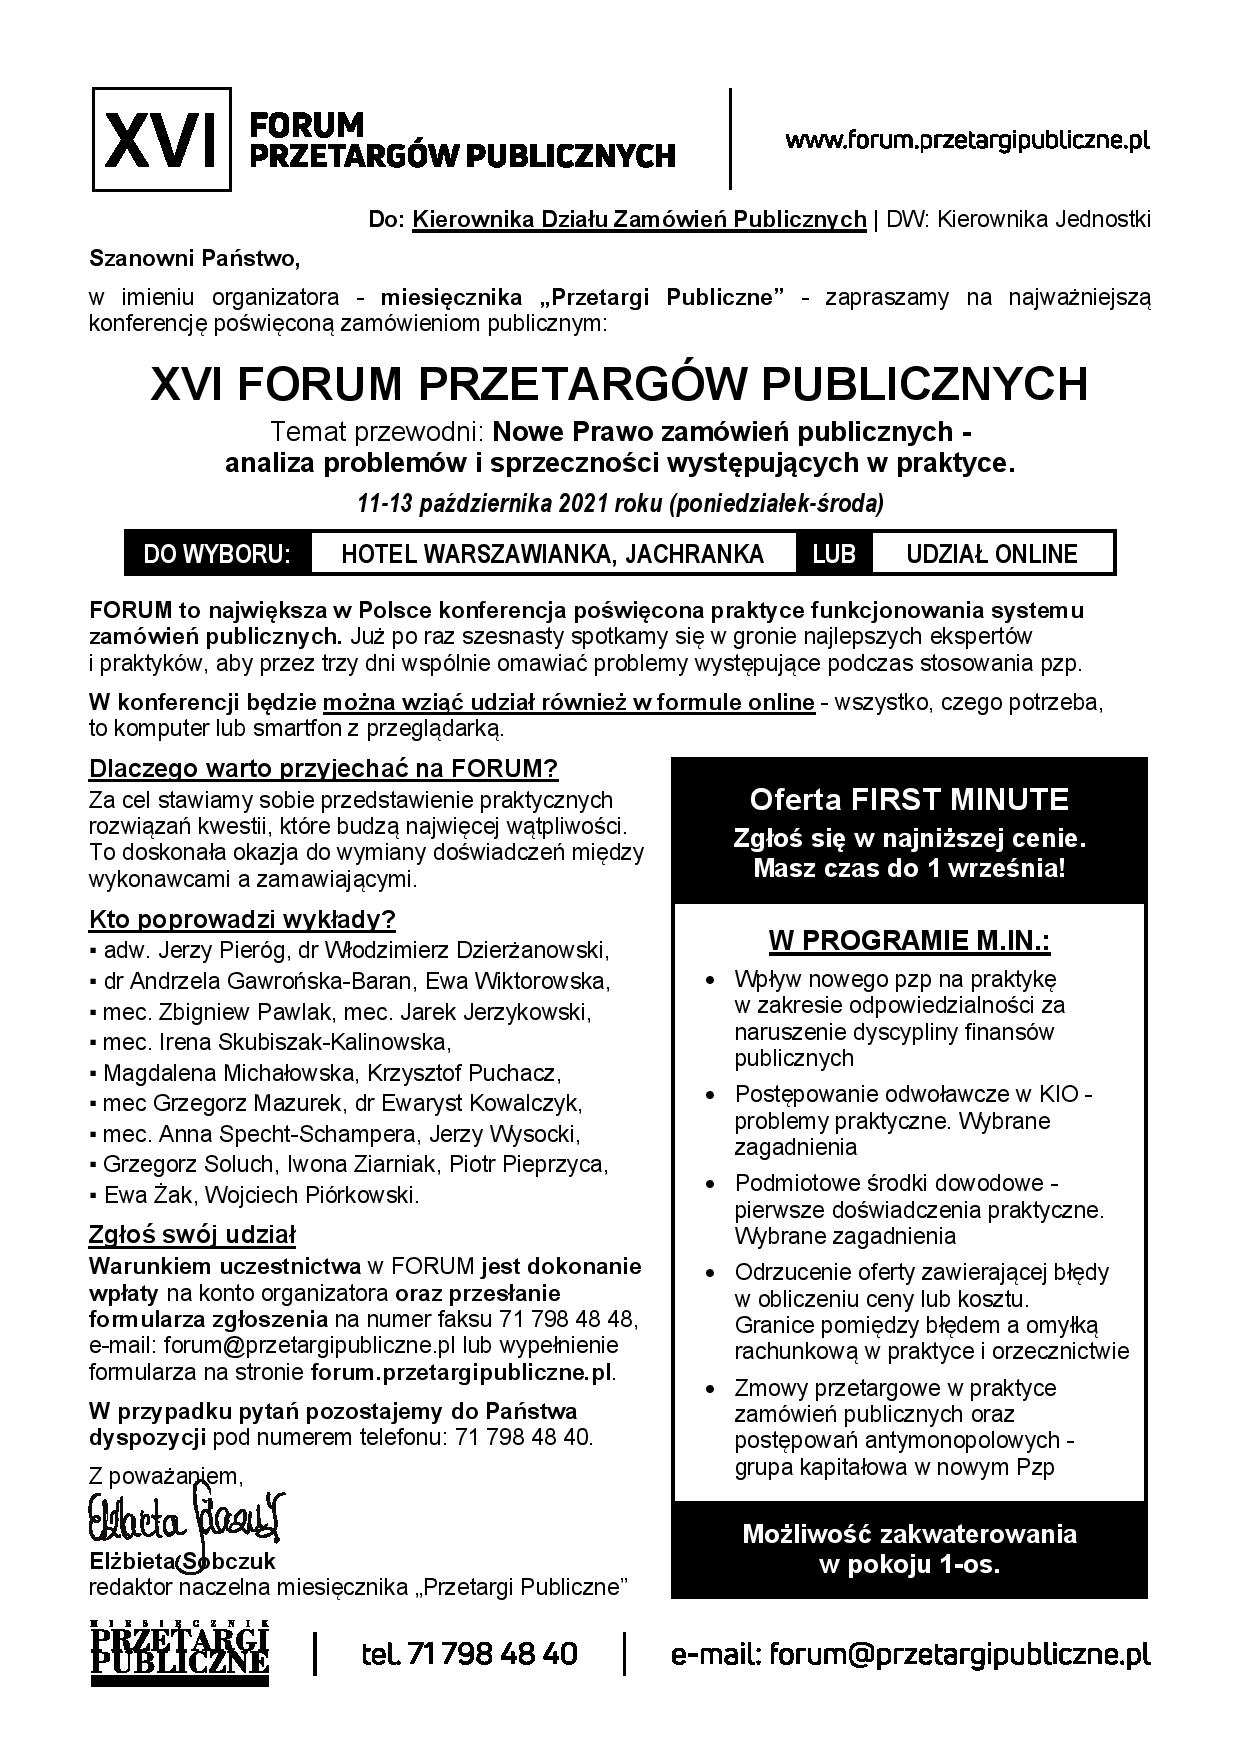 zaproszenie_2021-10-11_Jachranka_XVIFPP_1-page-001.jpg